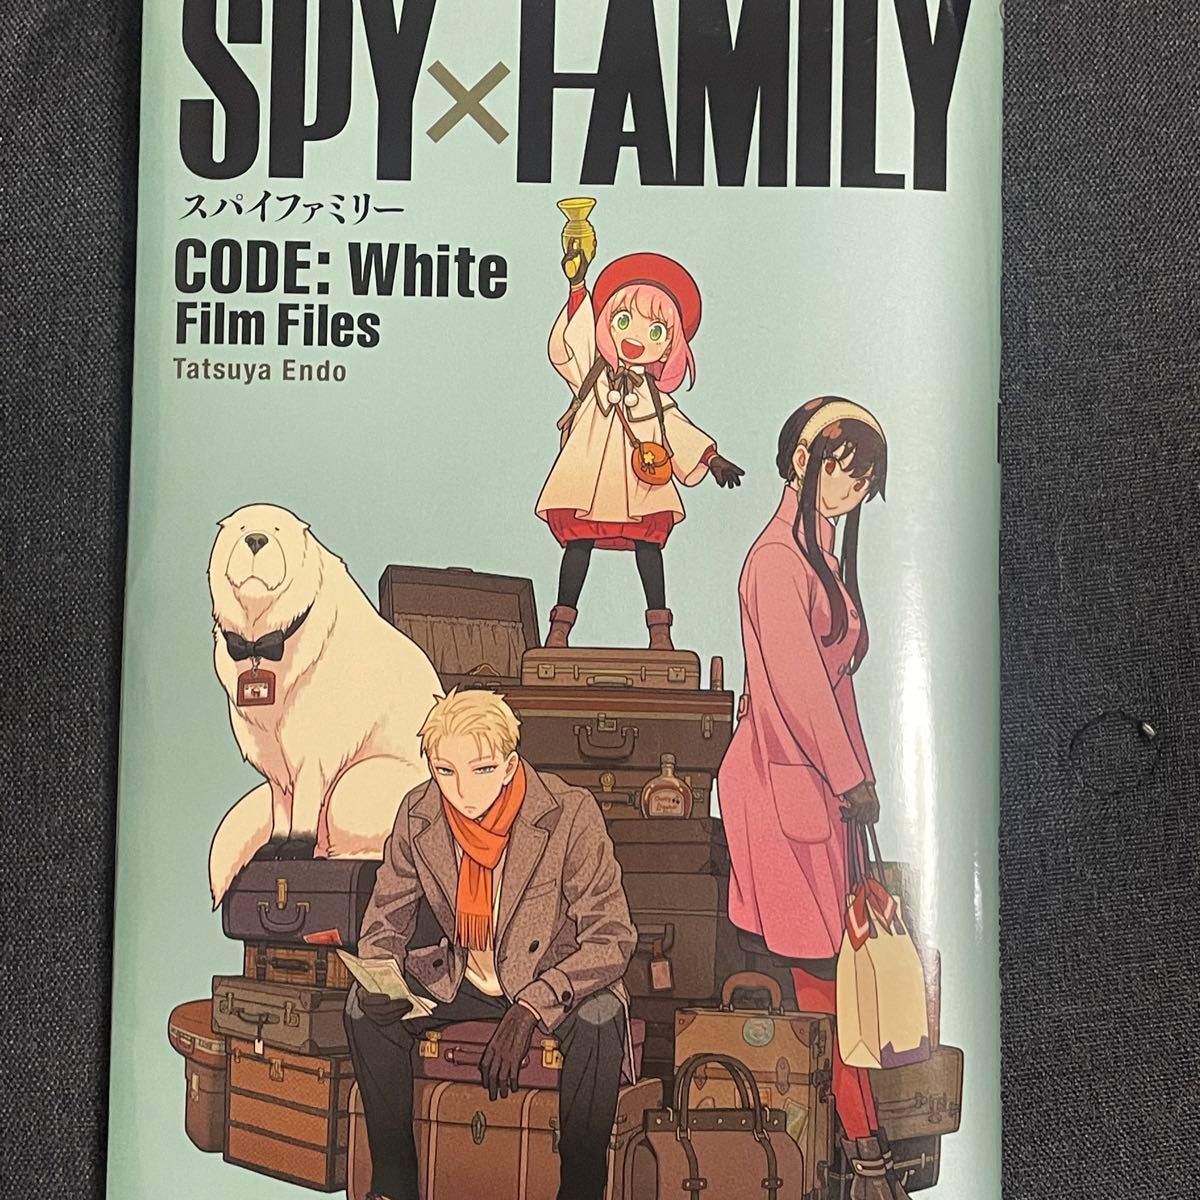 SPY FAMILY スパイファミリー CODE White 劇場版 Film Files 映画 小冊子 